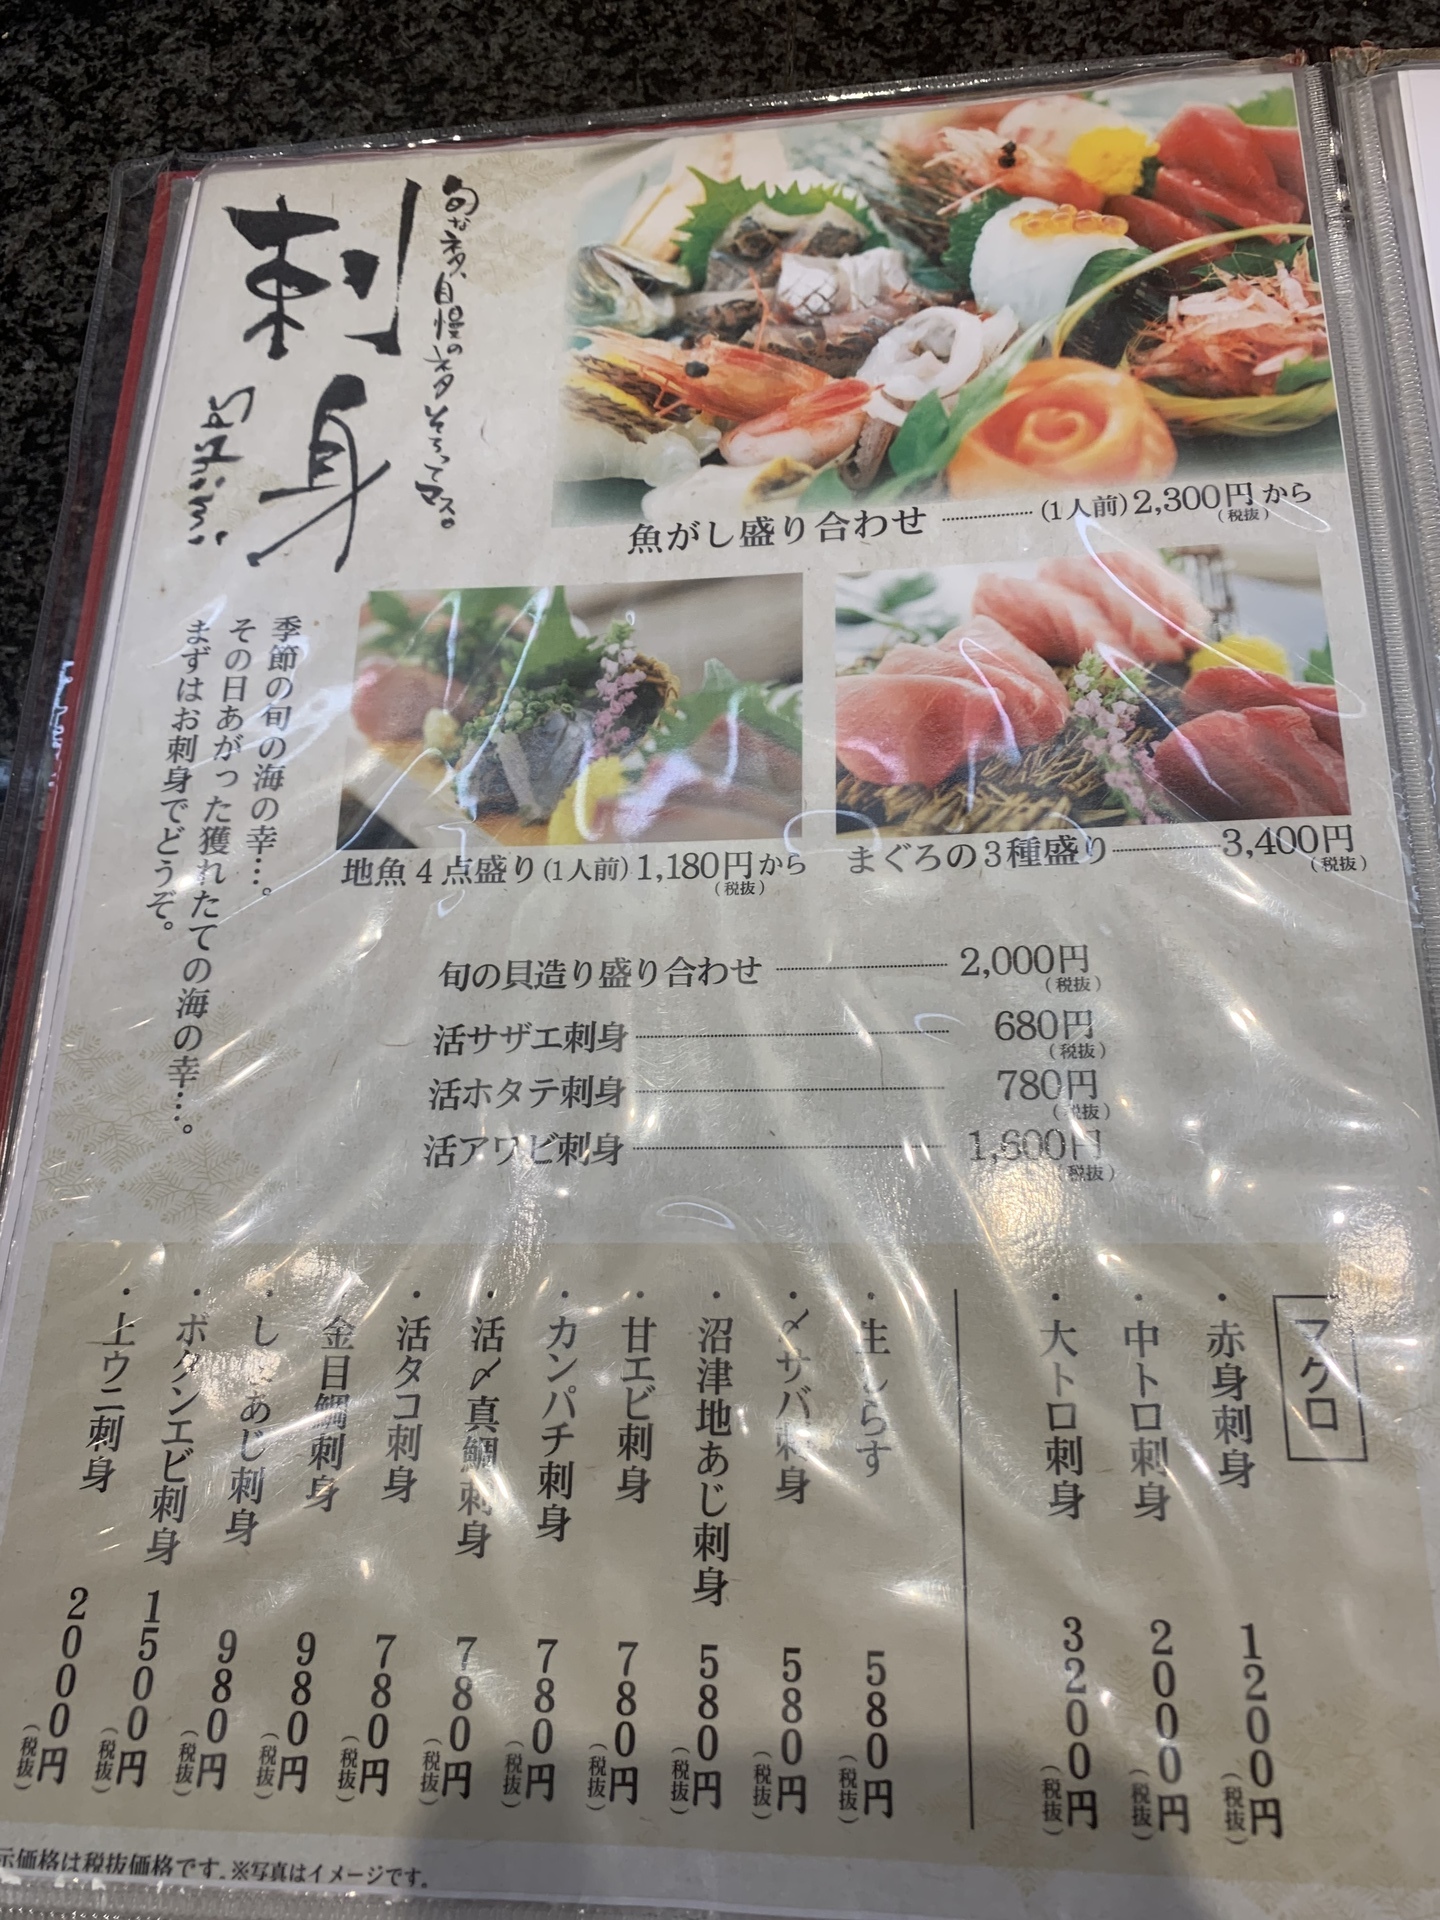 沼津 魚がし鮨 第2弾 刺身たっぷり 魚がし盛り合わせ グルメな方にオススメ 全国各地の美味い店